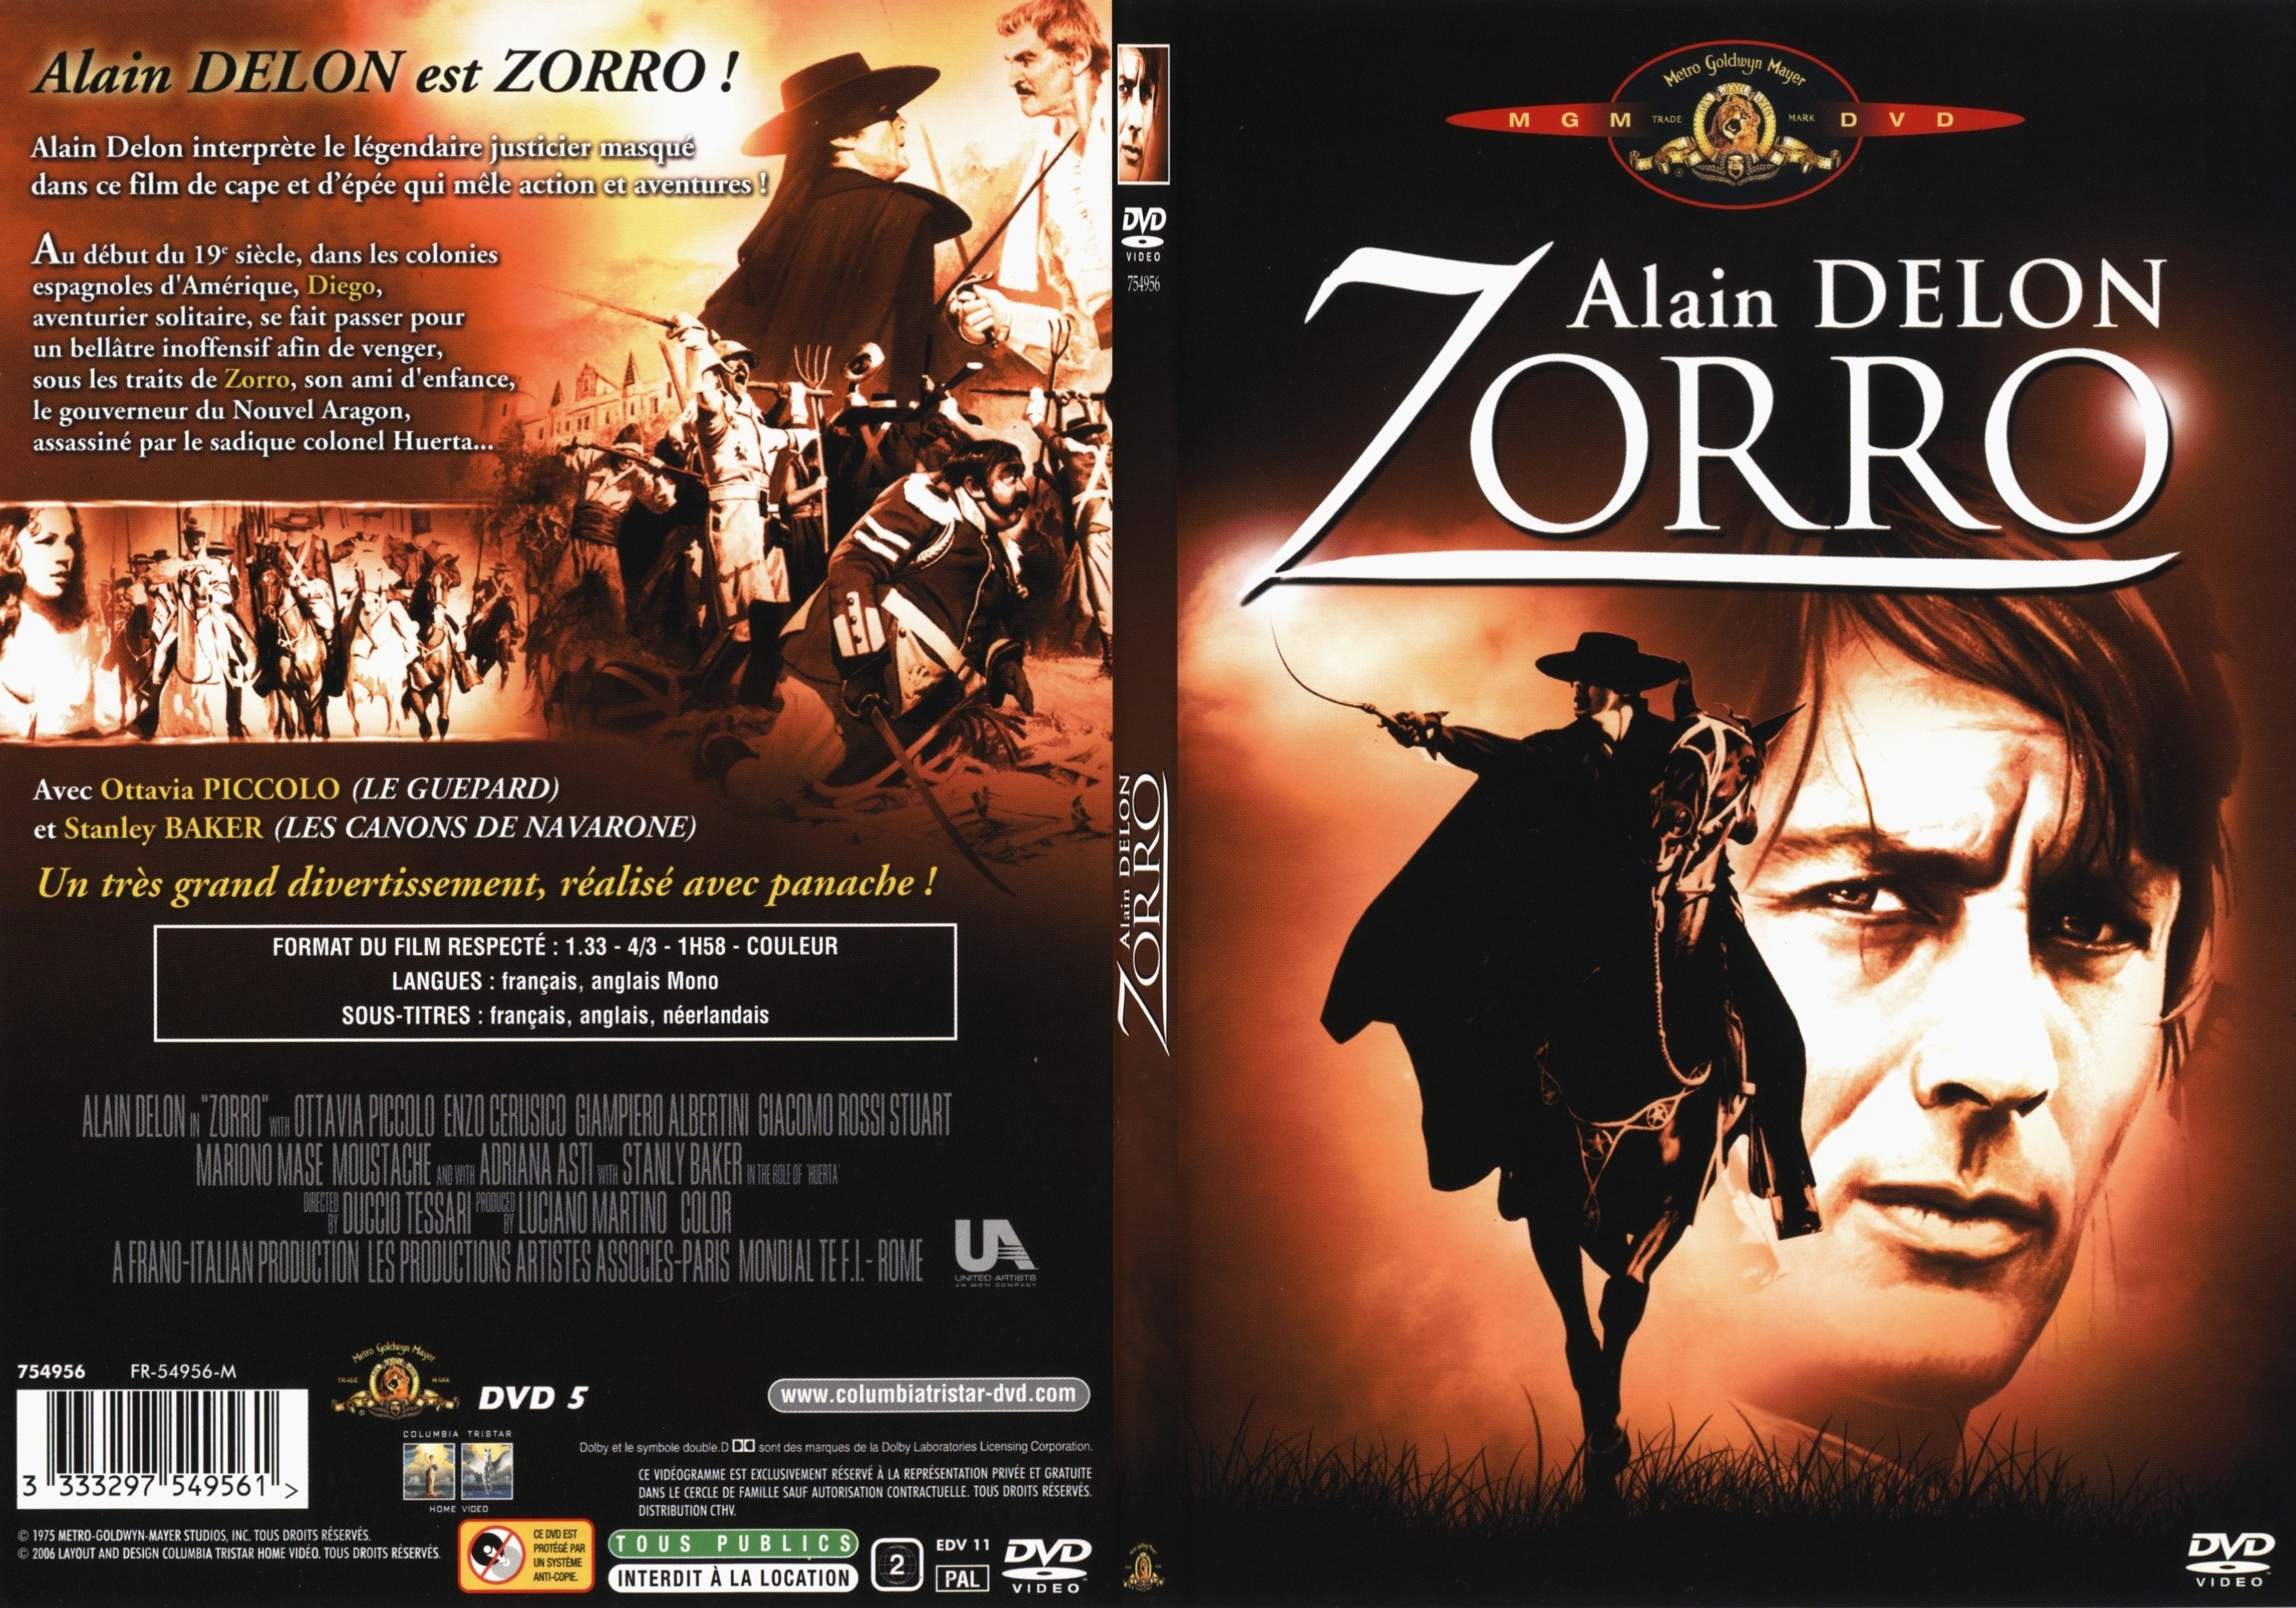 Jaquette DVD Zorro (Alain Delon) - SLIM v2